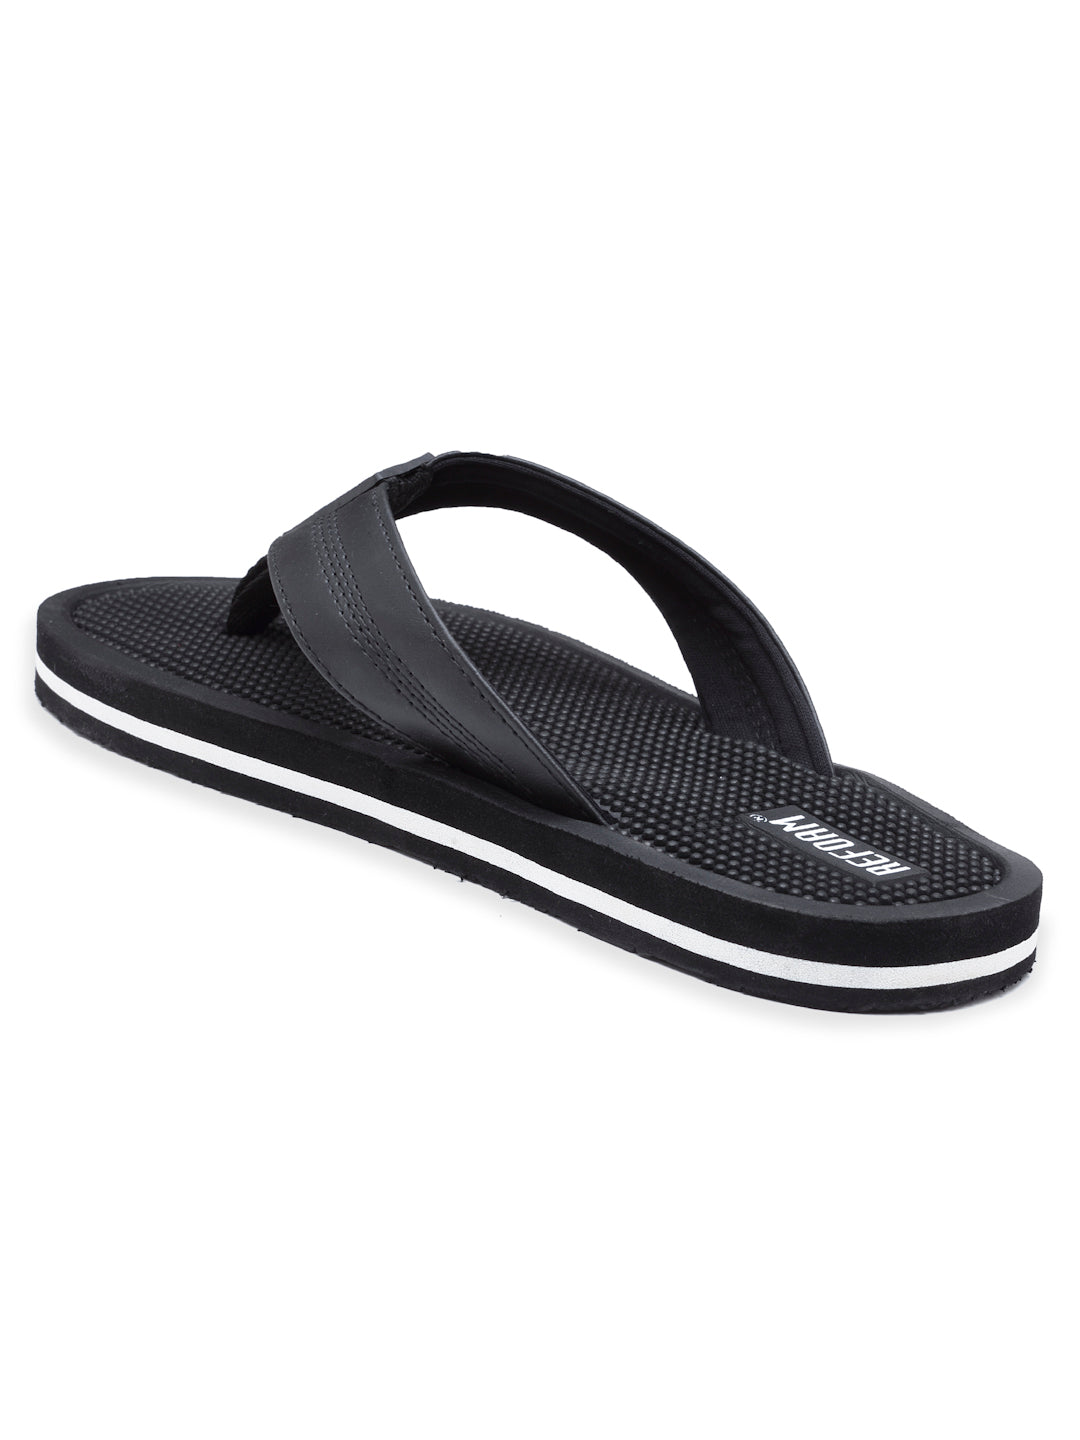 Black Solid EVA Rubber Slip On Casual Slippers For Men